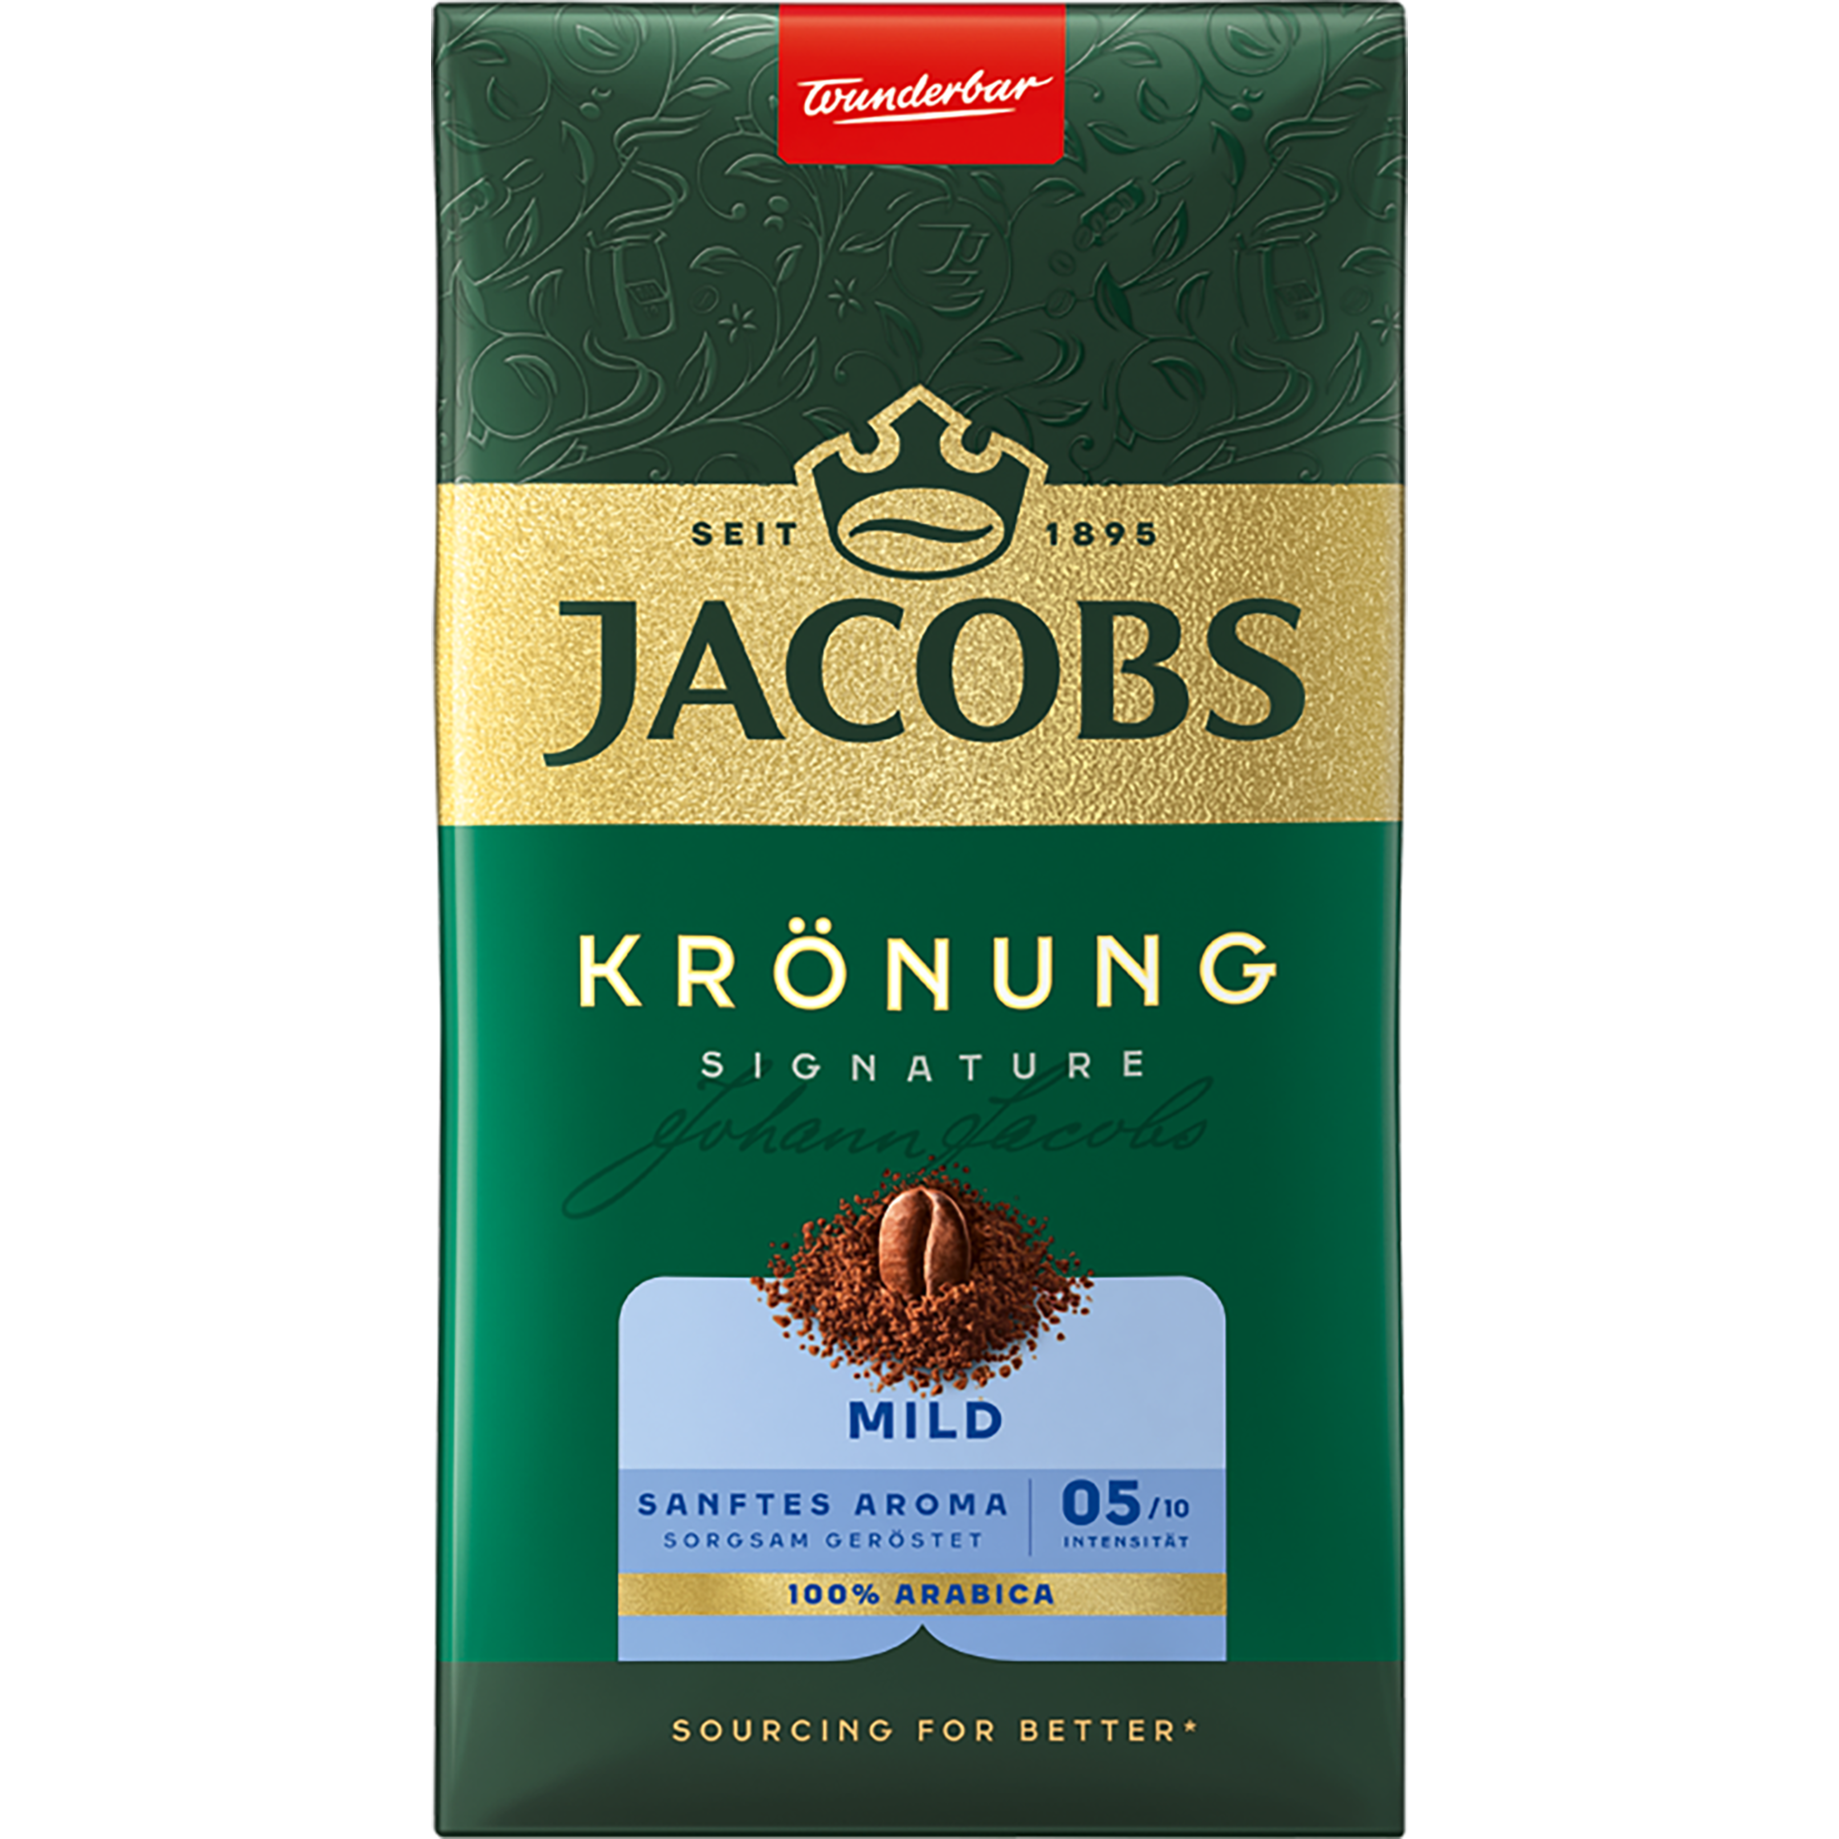 Kaffee Jacobs Krönung, gemahlen